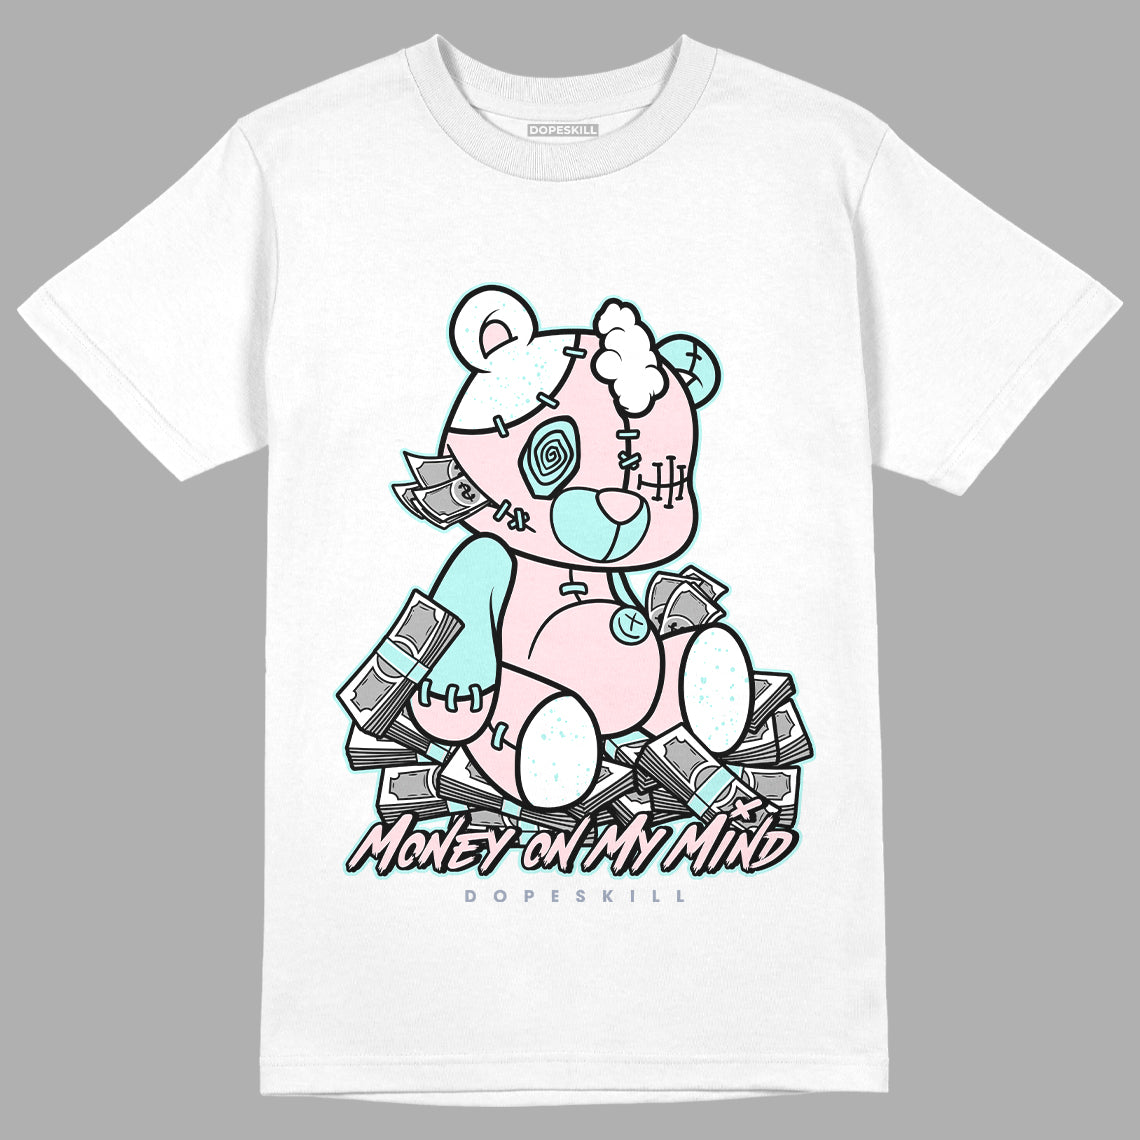 Jordan 5 Easter DopeSkill T-Shirt MOMM Bear Graphic - White